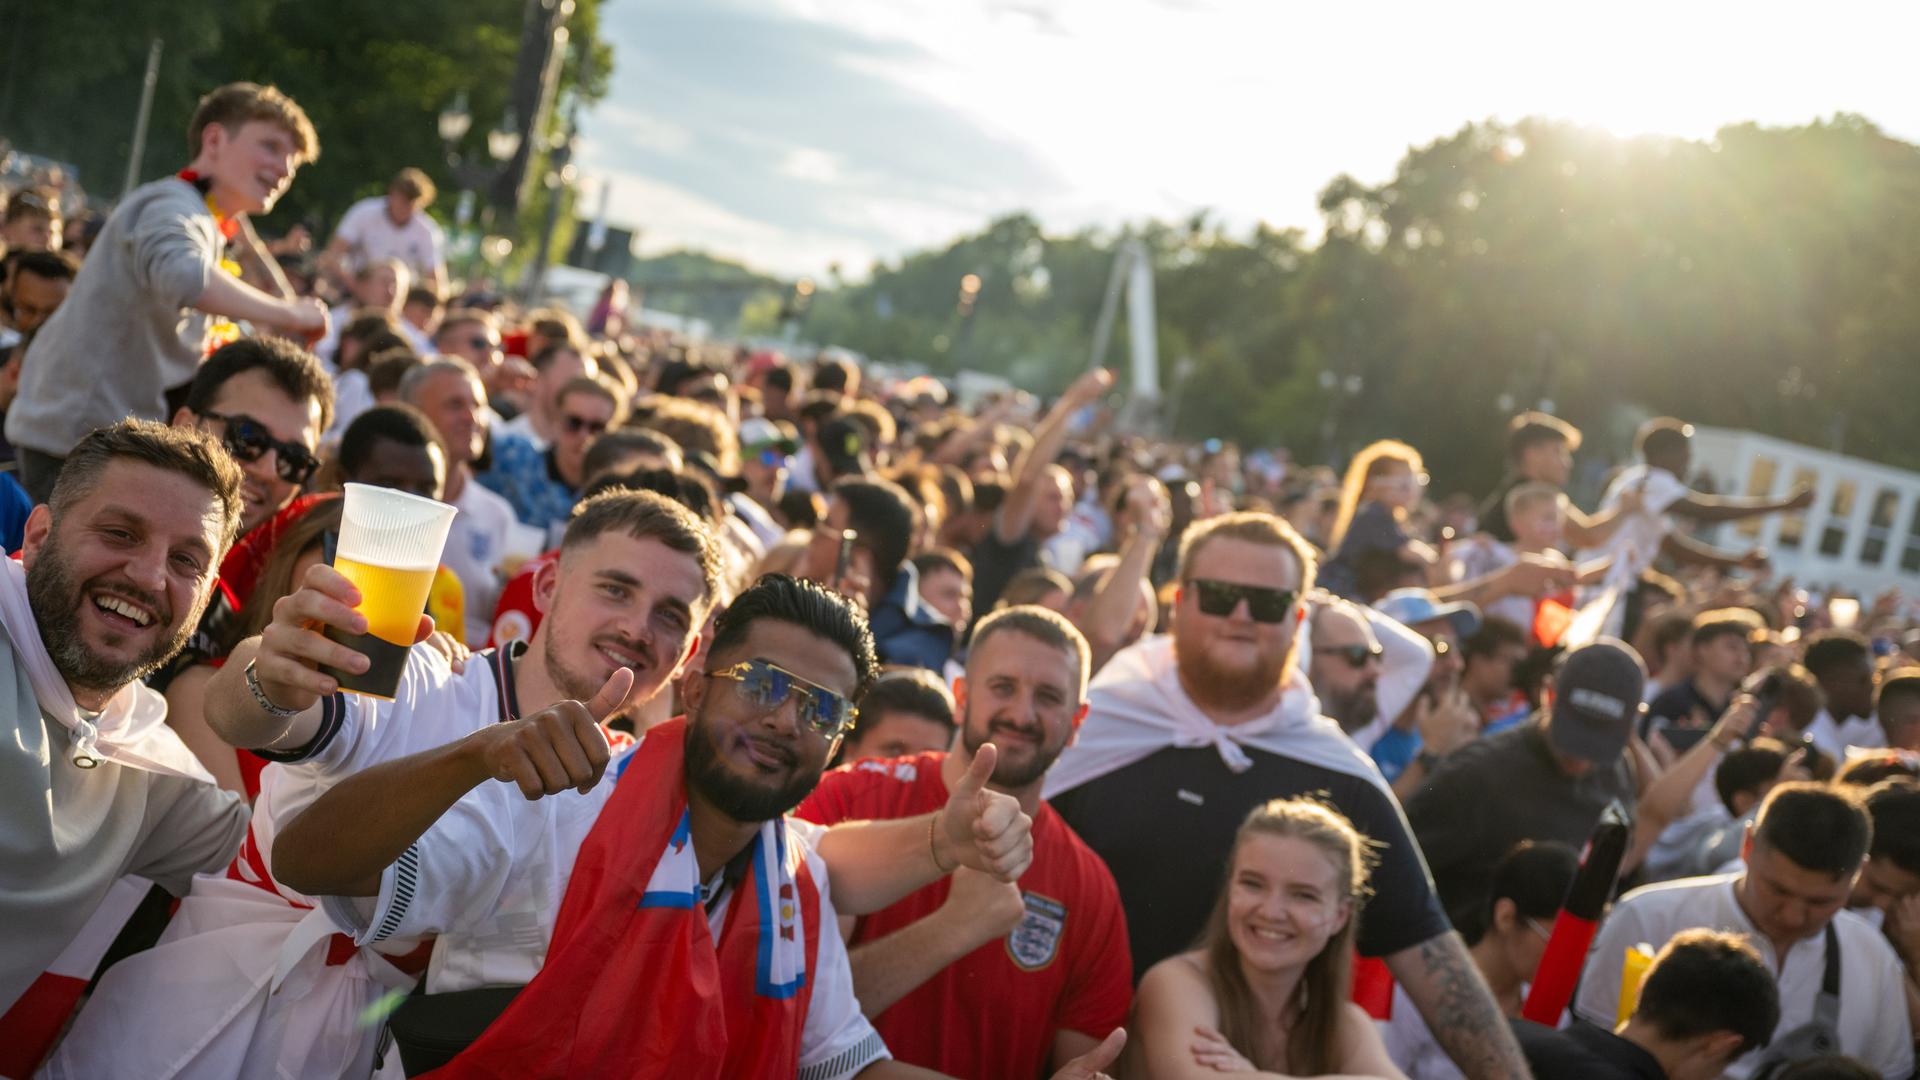 Fußballfans auf der Berliner Fanmeile stehen eng zusammen, heben Biergläser und lachen. Sie tragen Fanshirts.